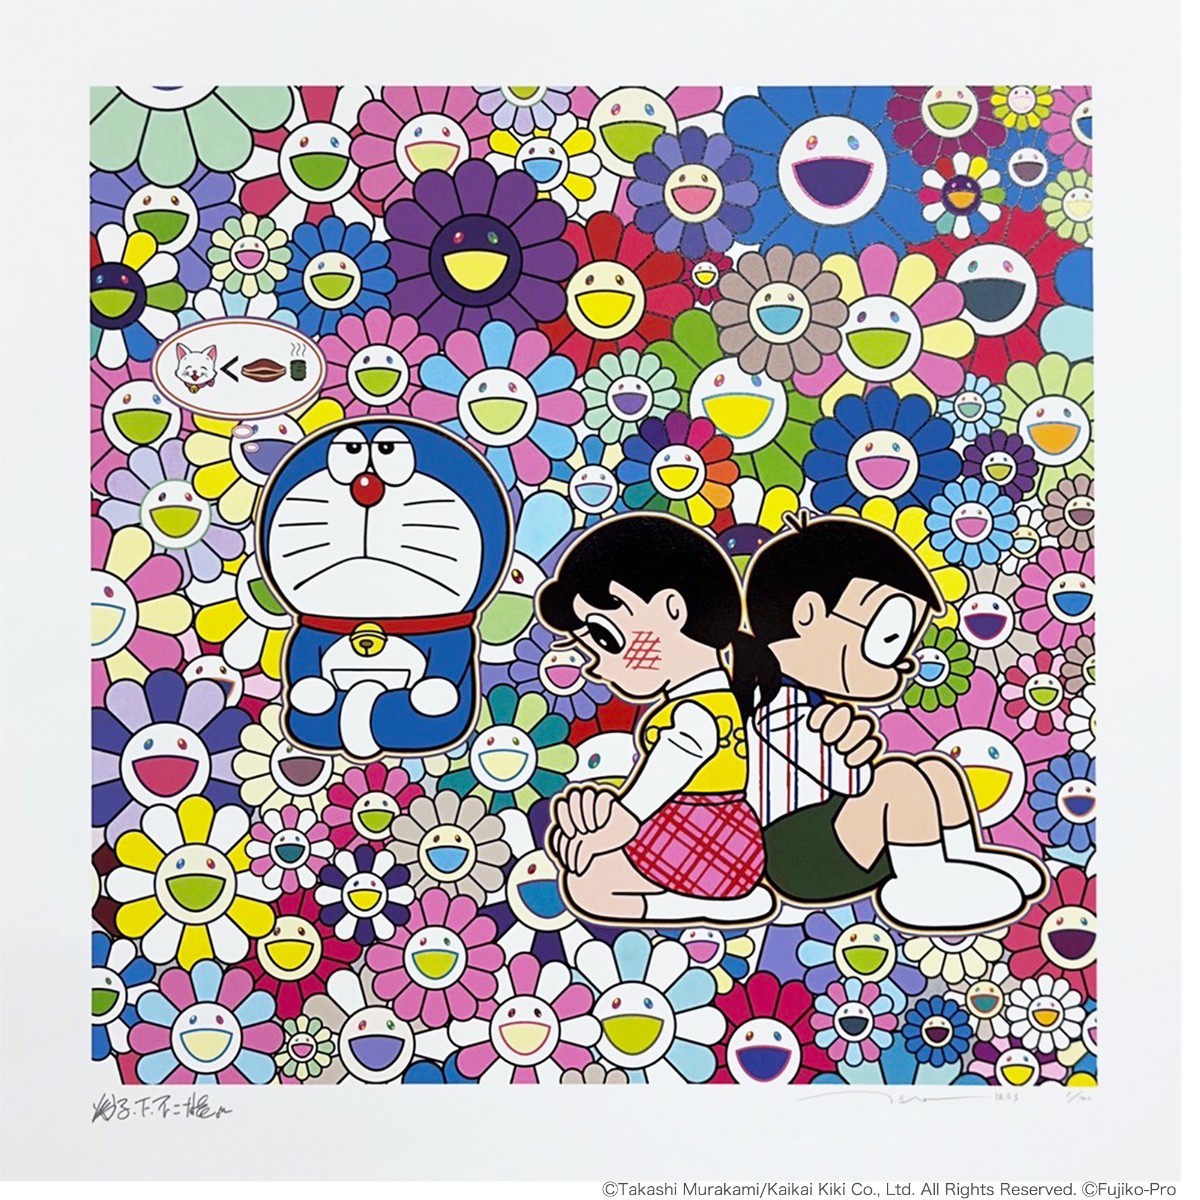 良番！ゾロ目！初恋 そして我思う、今夜のディナーのことなど ED100 版画 Silkscreen ドラえもん Doraemon 村上隆 Takashi Murakami